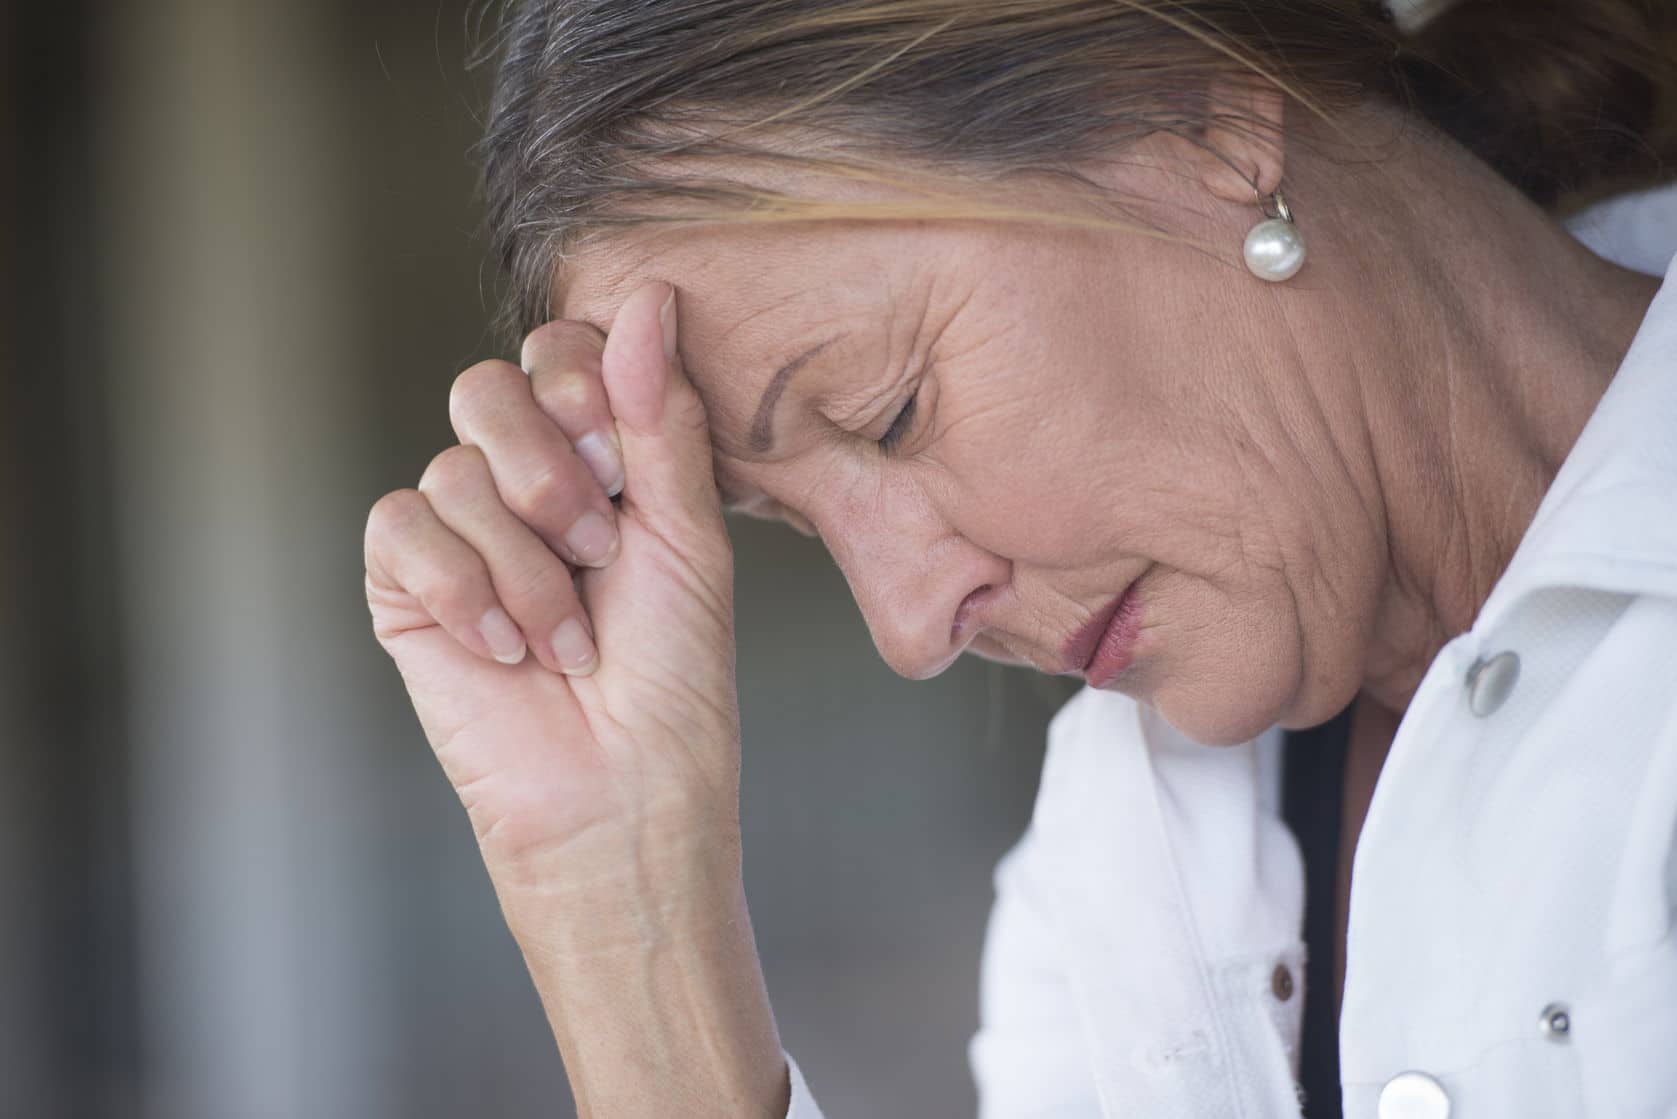 Mareo, uno de los síntomas de la menopausia